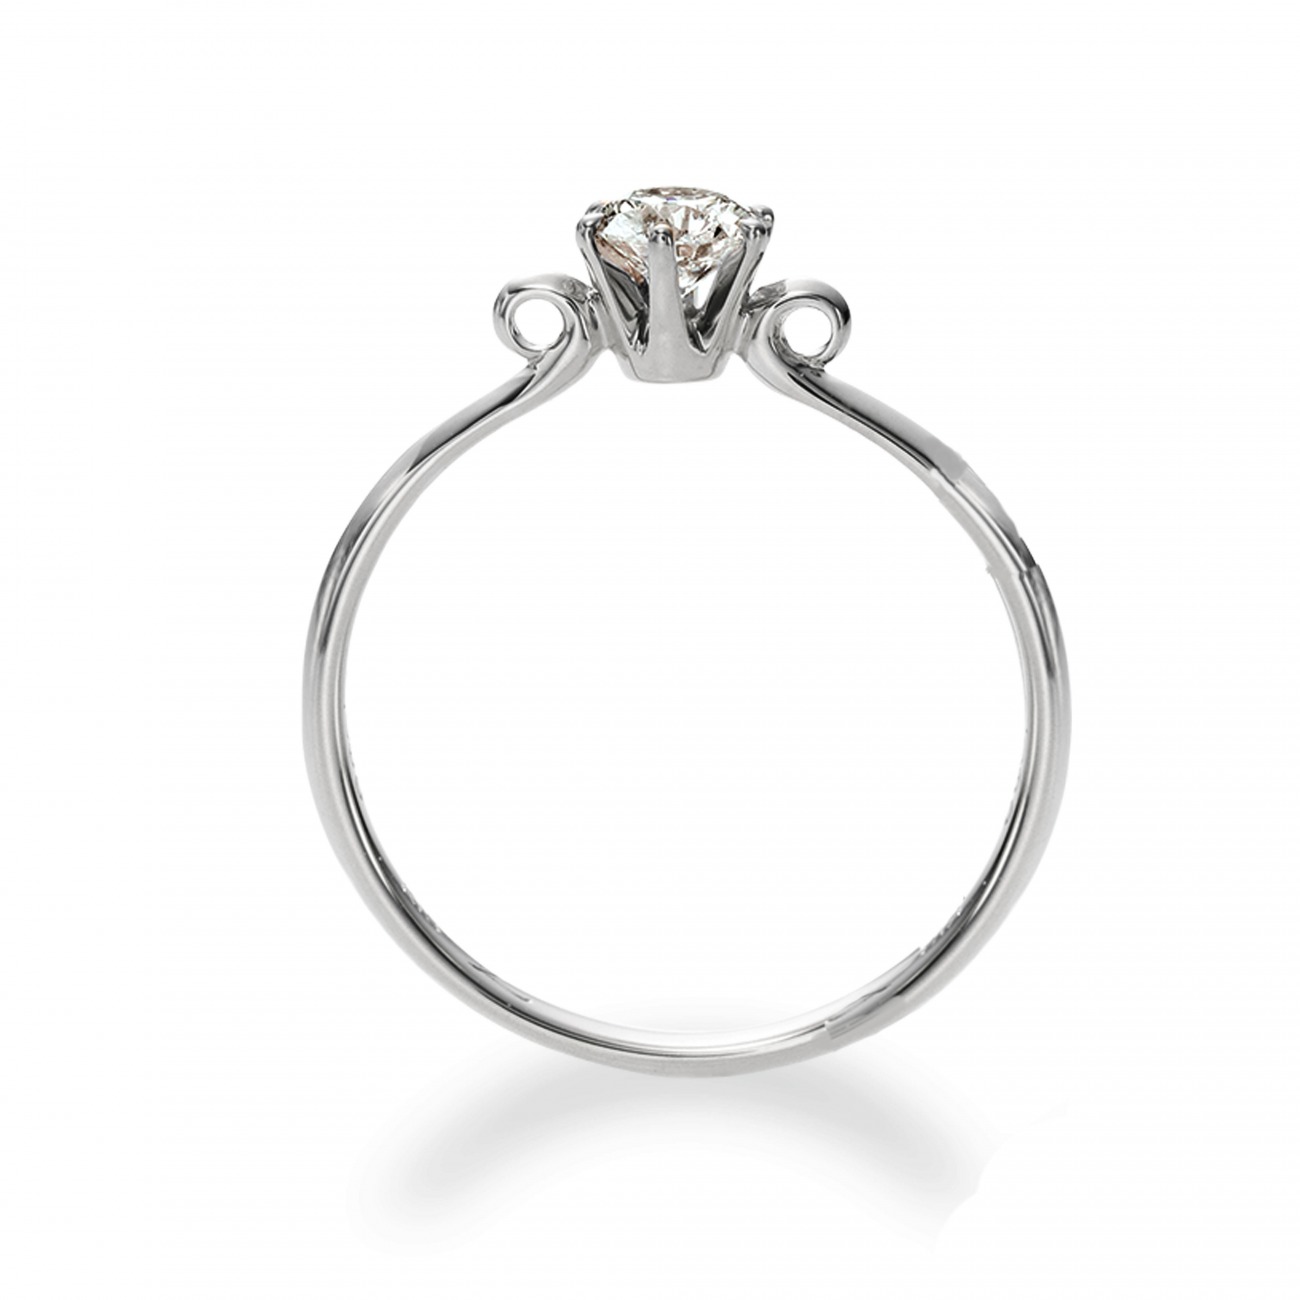 クルンとしたデザインかわいい婚約指輪